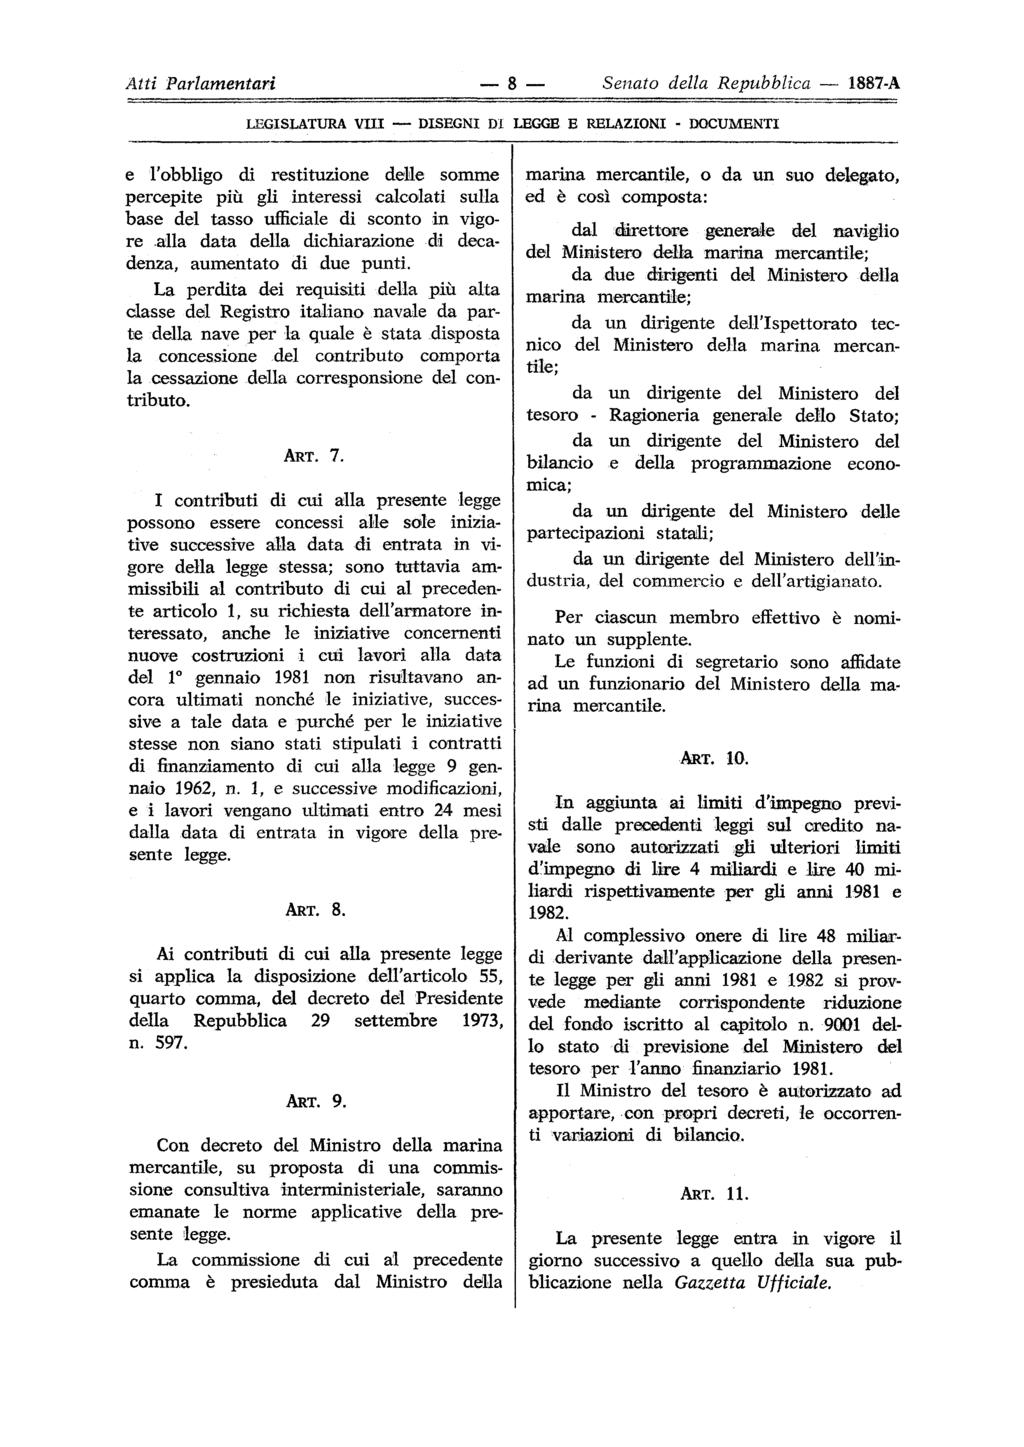 Atti Parlamentari 8 Senato della Repubblica 1887-A LEGISLATURA Vili DISEGNI DI LEGGE E RELAZIONI - DOCUMENTI e l'obbligo di restituzione dele somme percepite più gli interessi calcolati sulla base